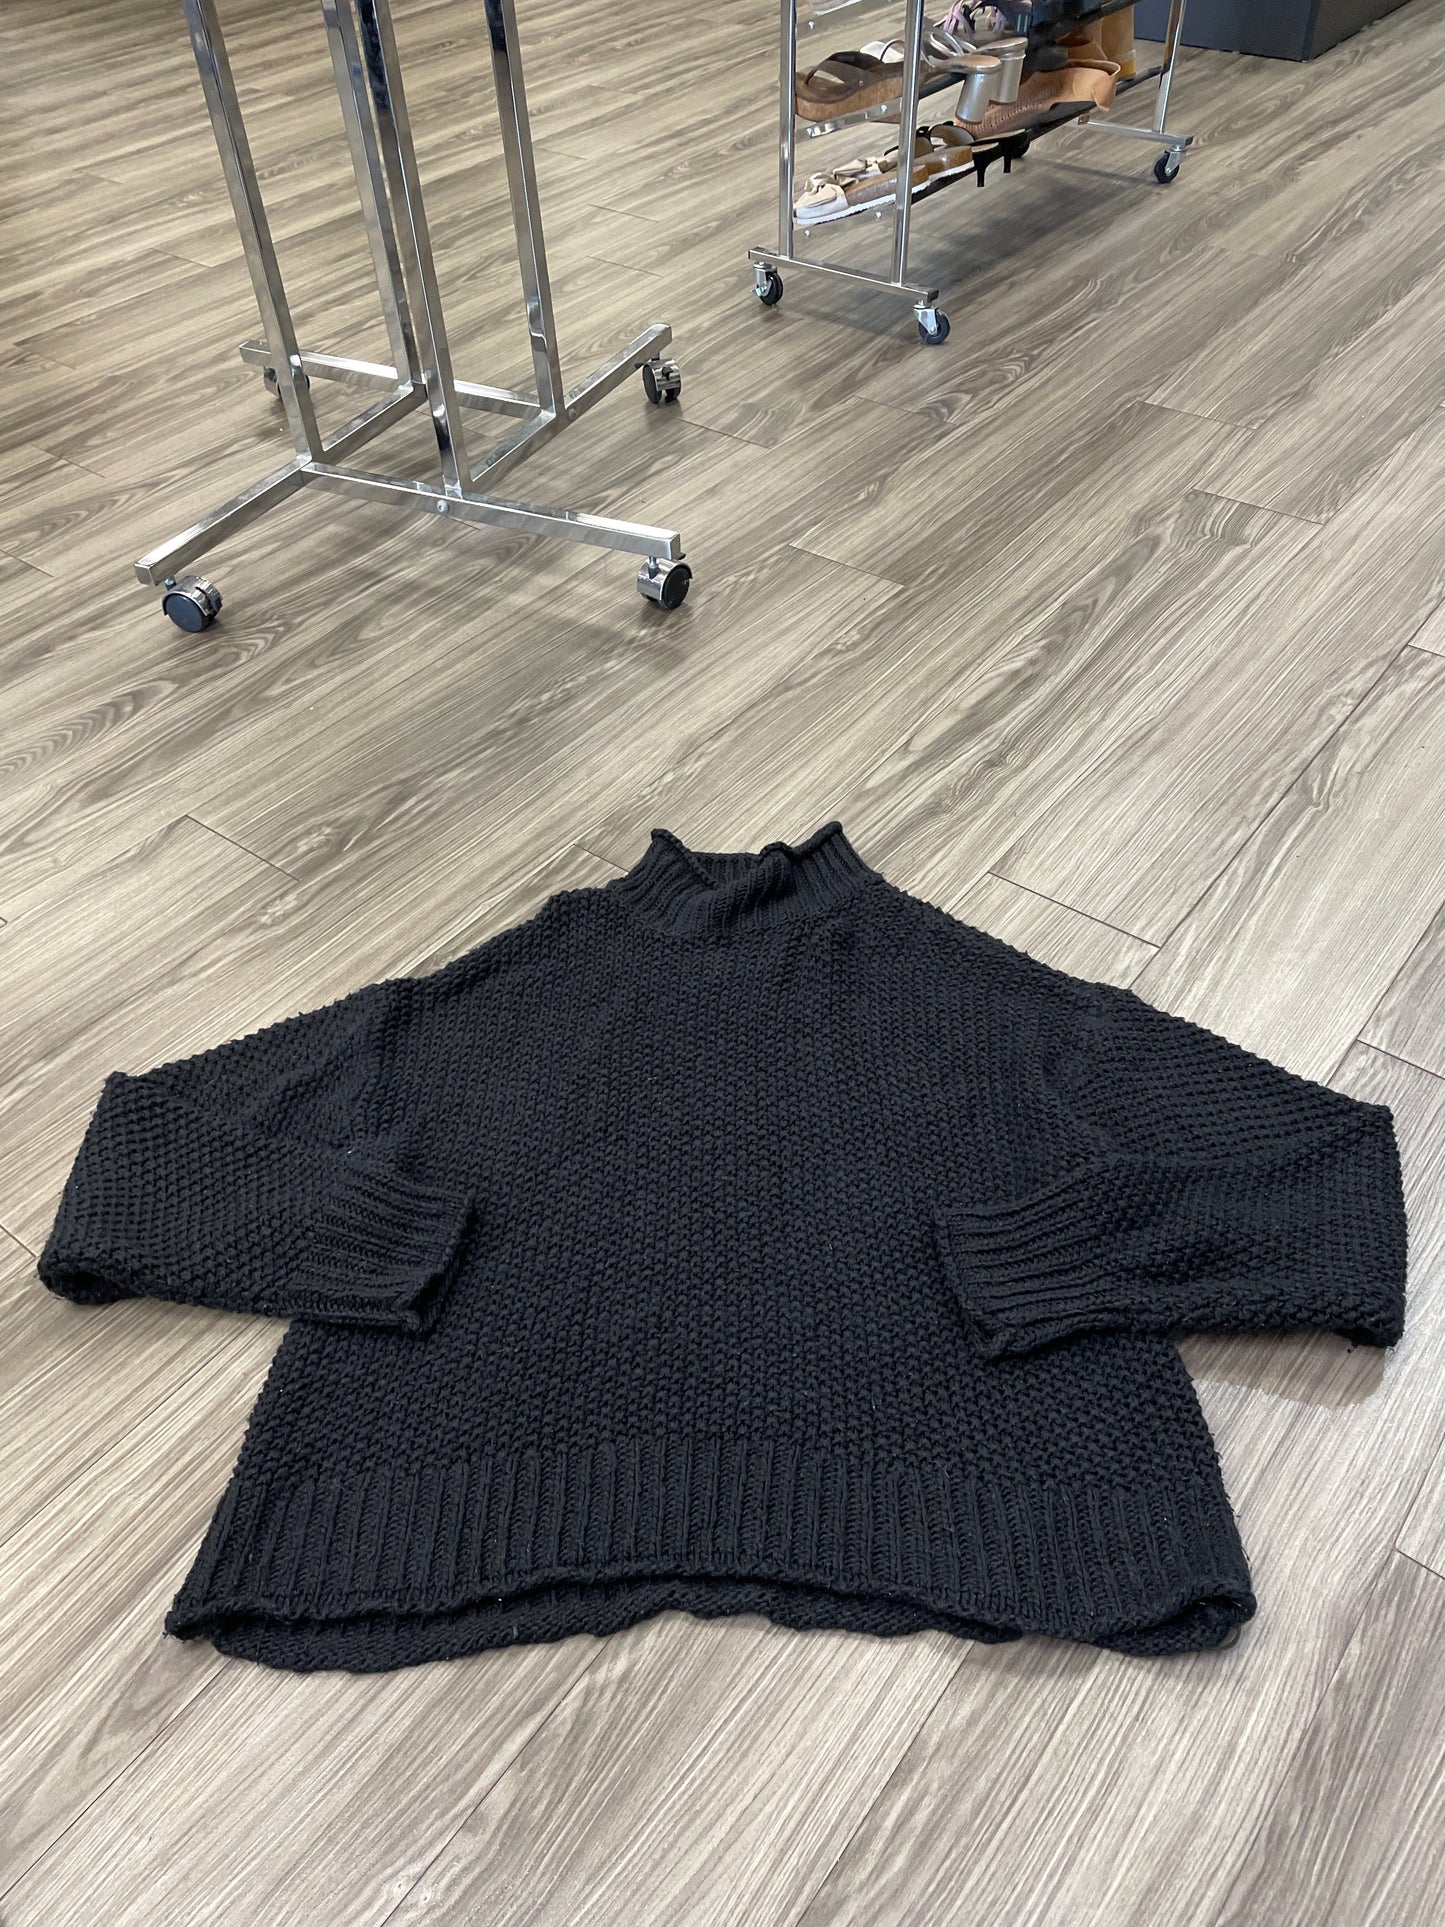 Black Sweater Ana, Size Xxl